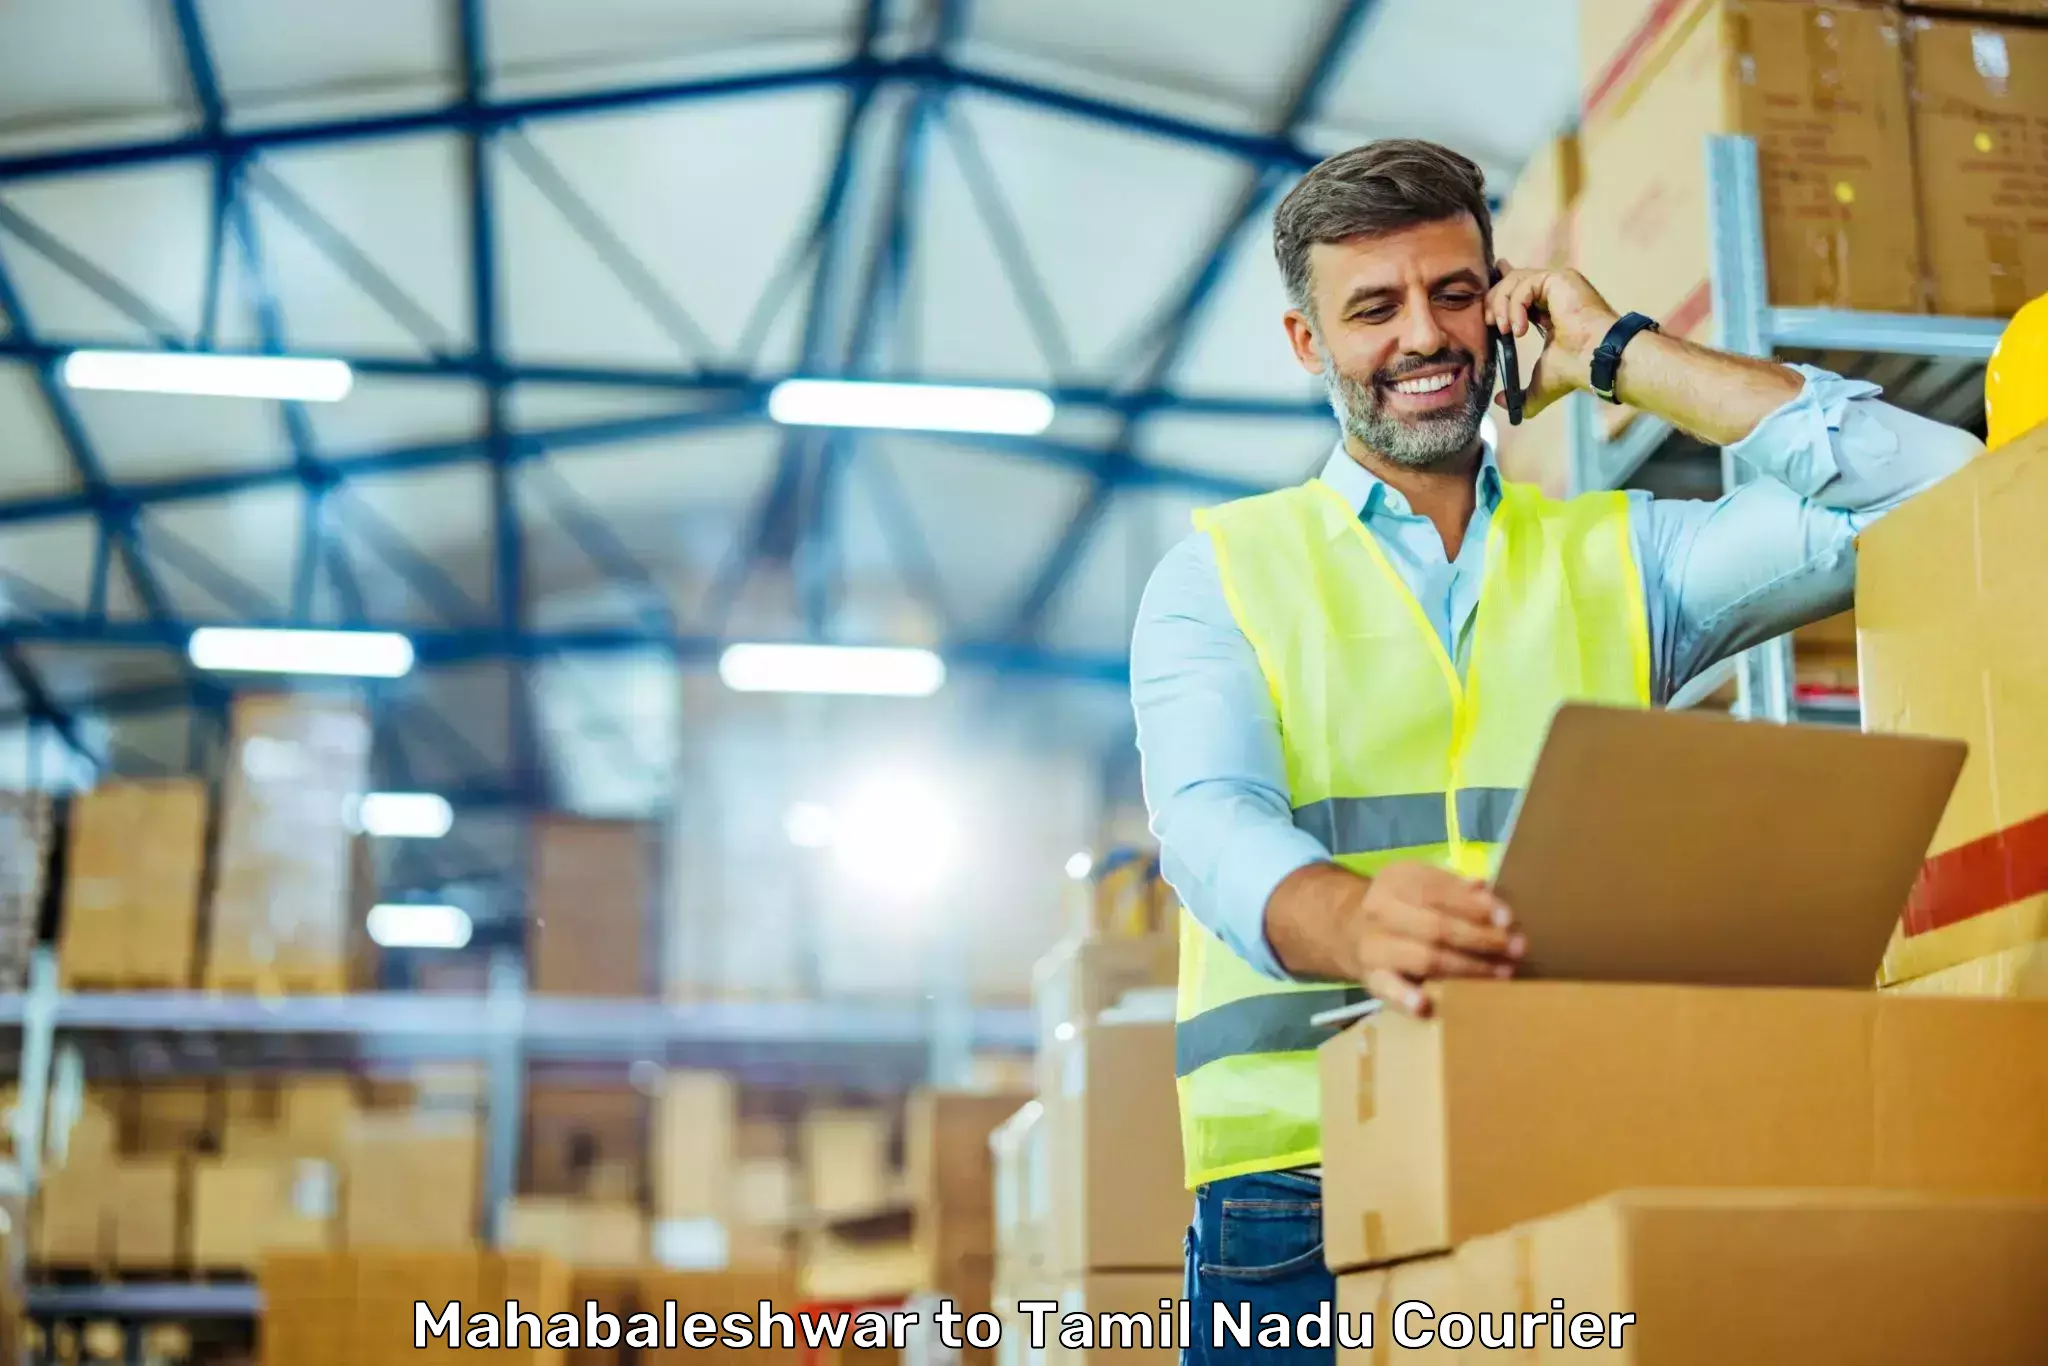 Next-generation courier services Mahabaleshwar to Kalpakkam